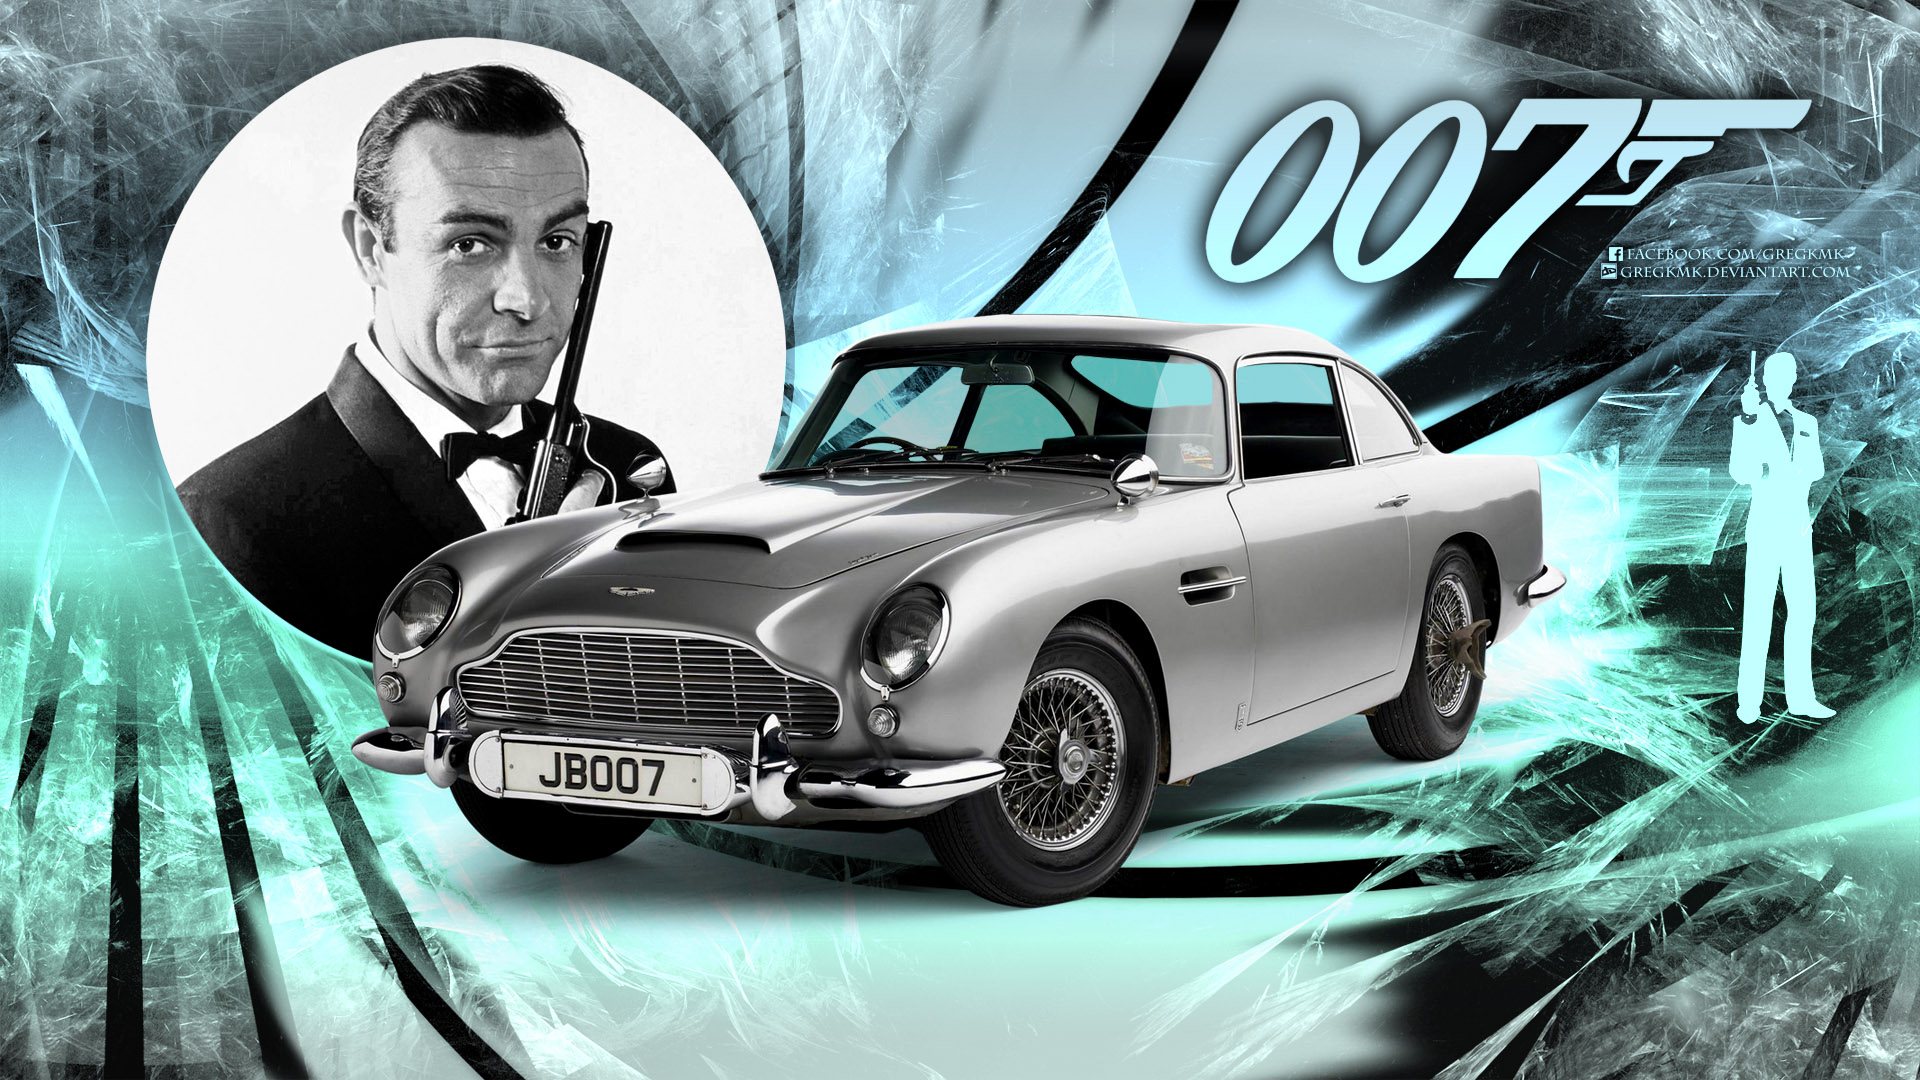 James Bond 007 Wallpaper by GregKmk on DeviantArt